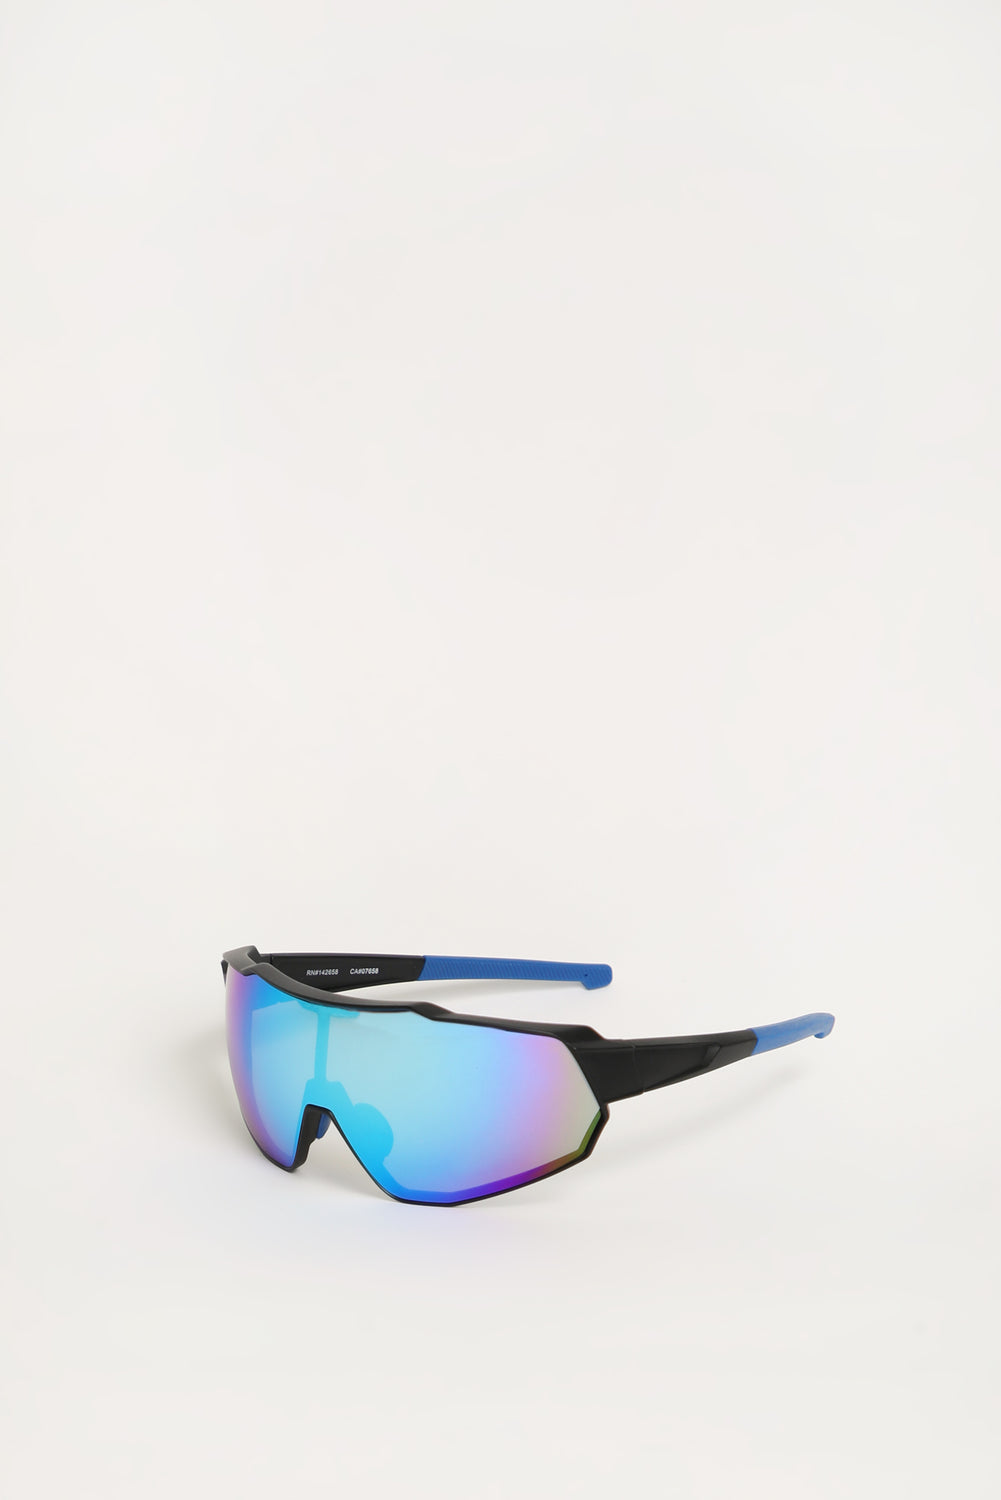 West49 Shield Sunglasses West49 Shield Sunglasses